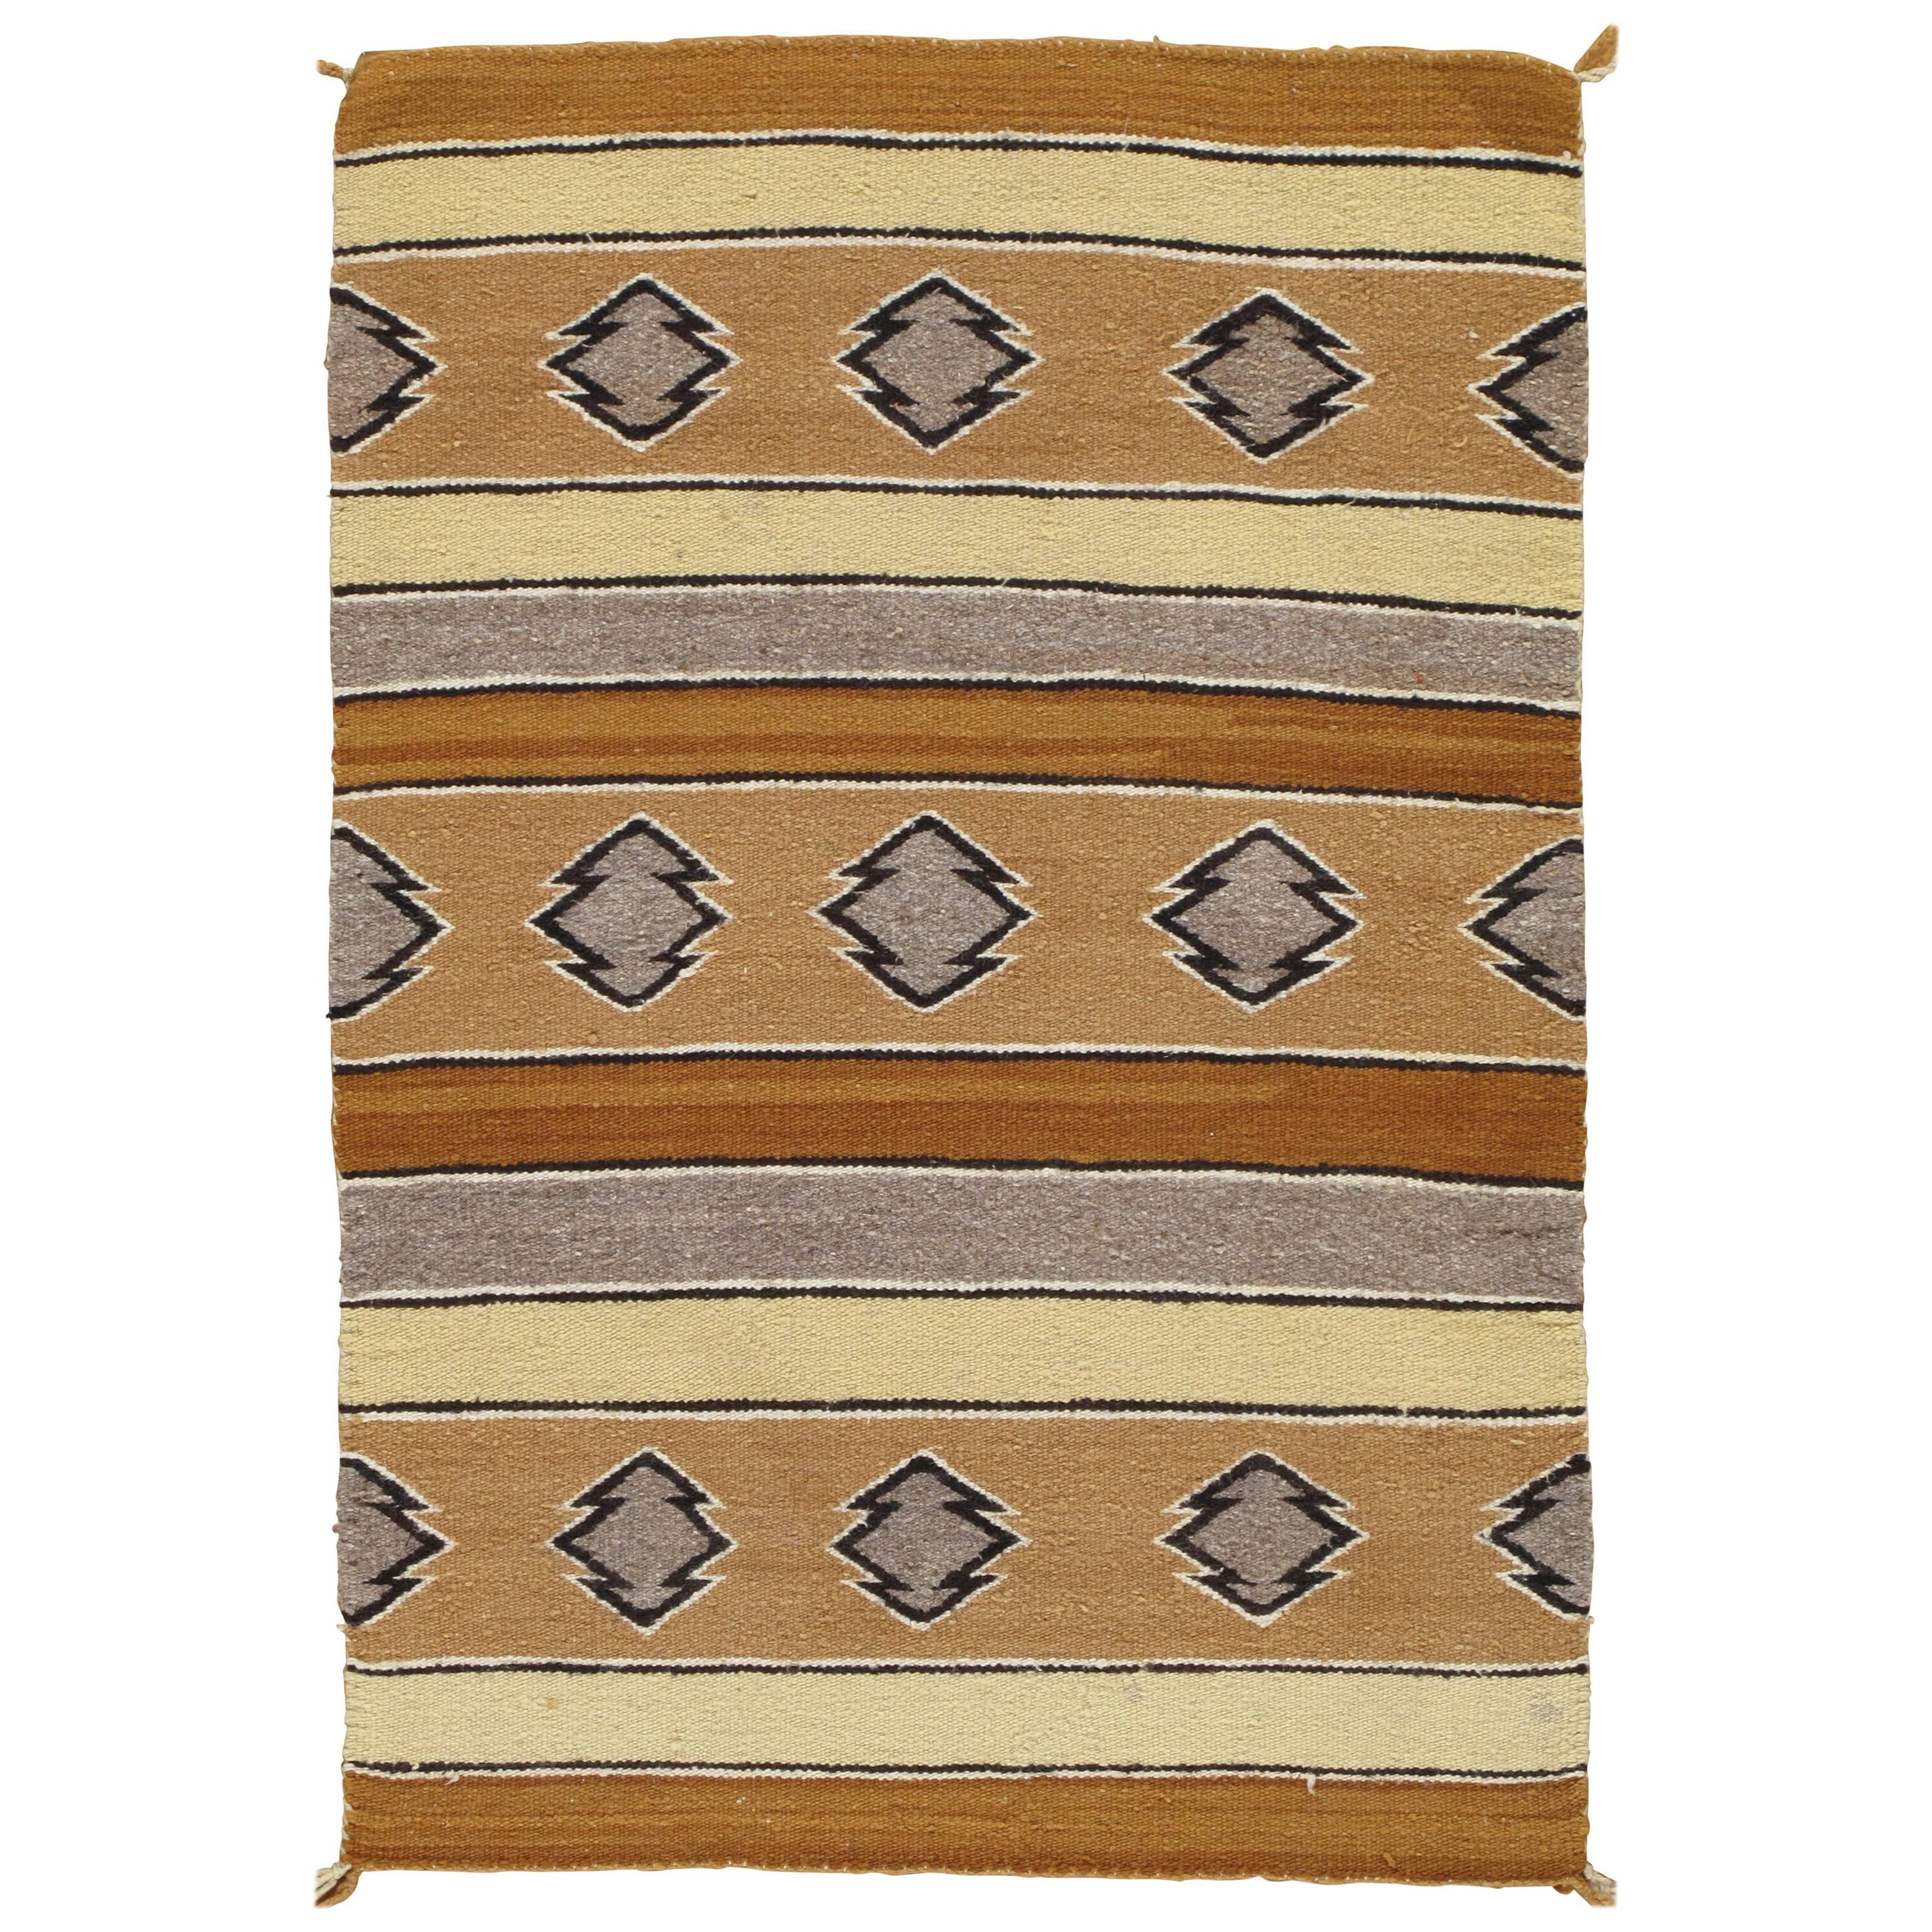 Vintage Navajo Carpet, Folk Rug, Handmade Wool, Beige, Caramel, Tan